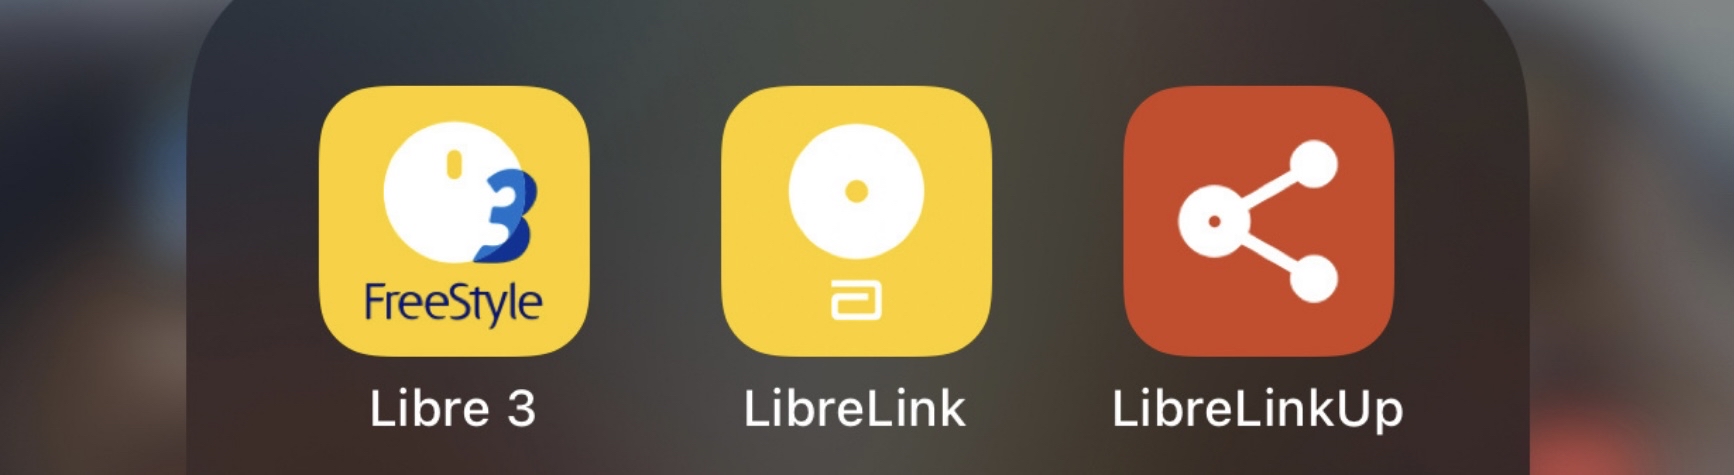 Защищено: Установка приложений LibreLink или Dexcom на Айфон